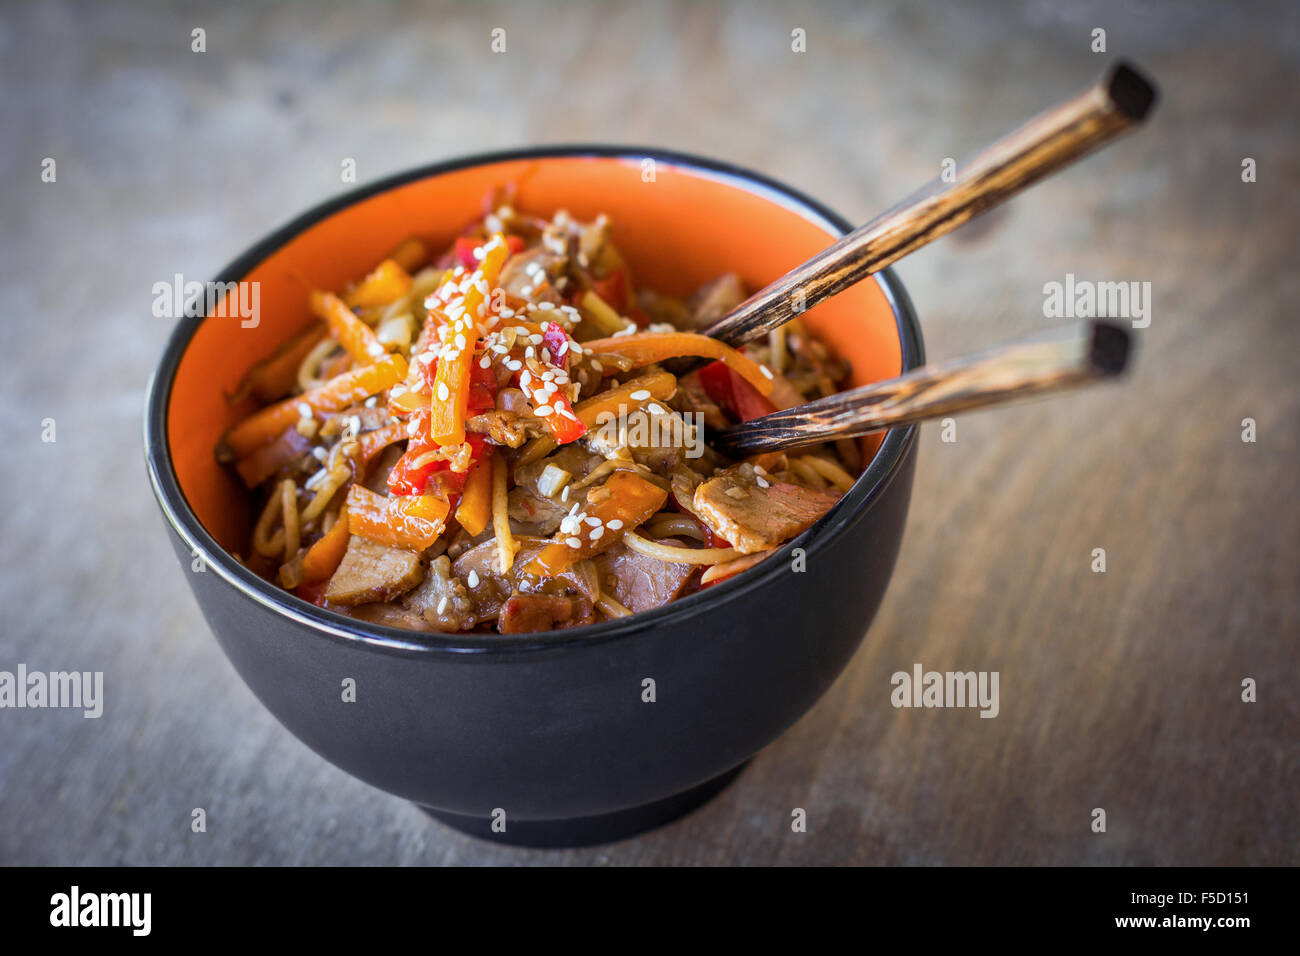 Pfannengerichte mit Gemüse und Fleisch, garniert mit Sesam in Schüssel mit  Stäbchen. Traditionelle asiatische Küche Stockfotografie - Alamy